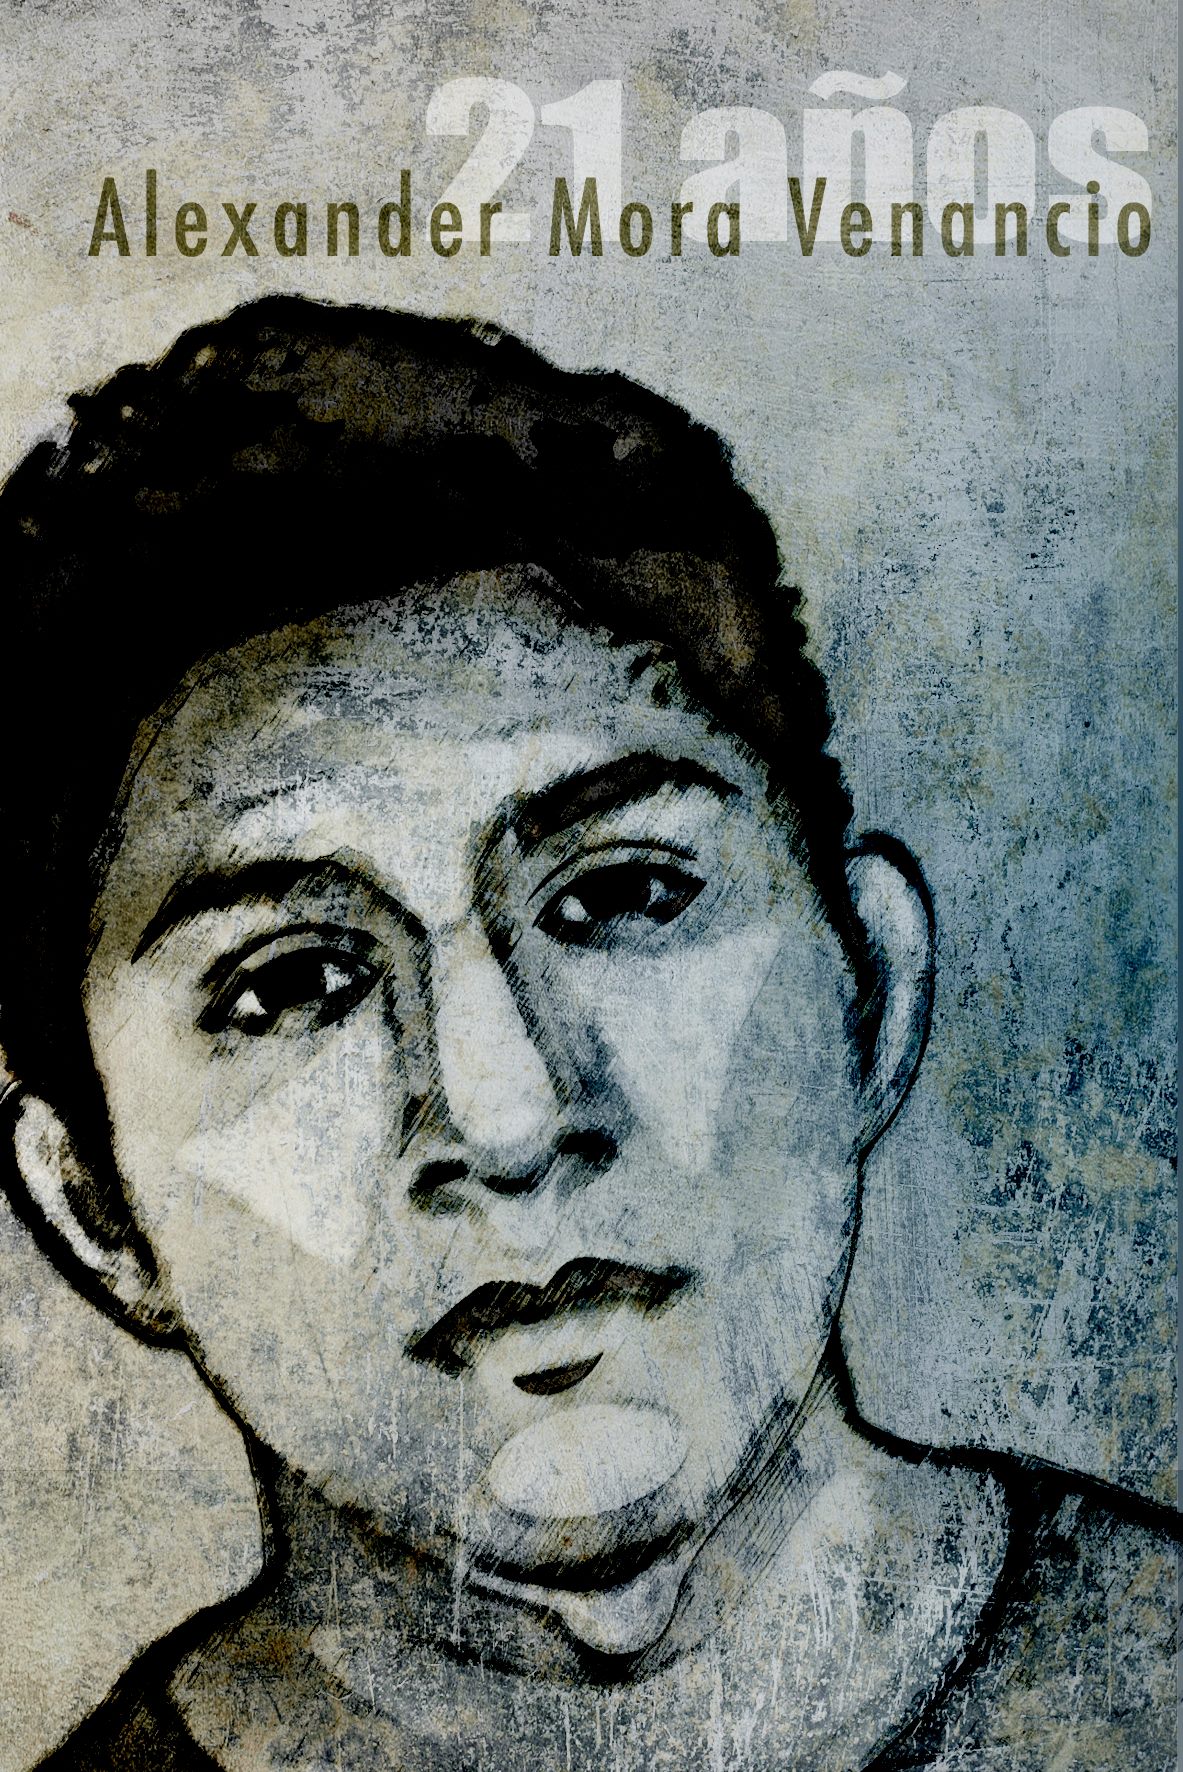 Portrait of Alexander Mora Venancio by Kathia Recio from the movement Ilustrators with Ayotzinapa #IlustradoresConAyotzinapa.